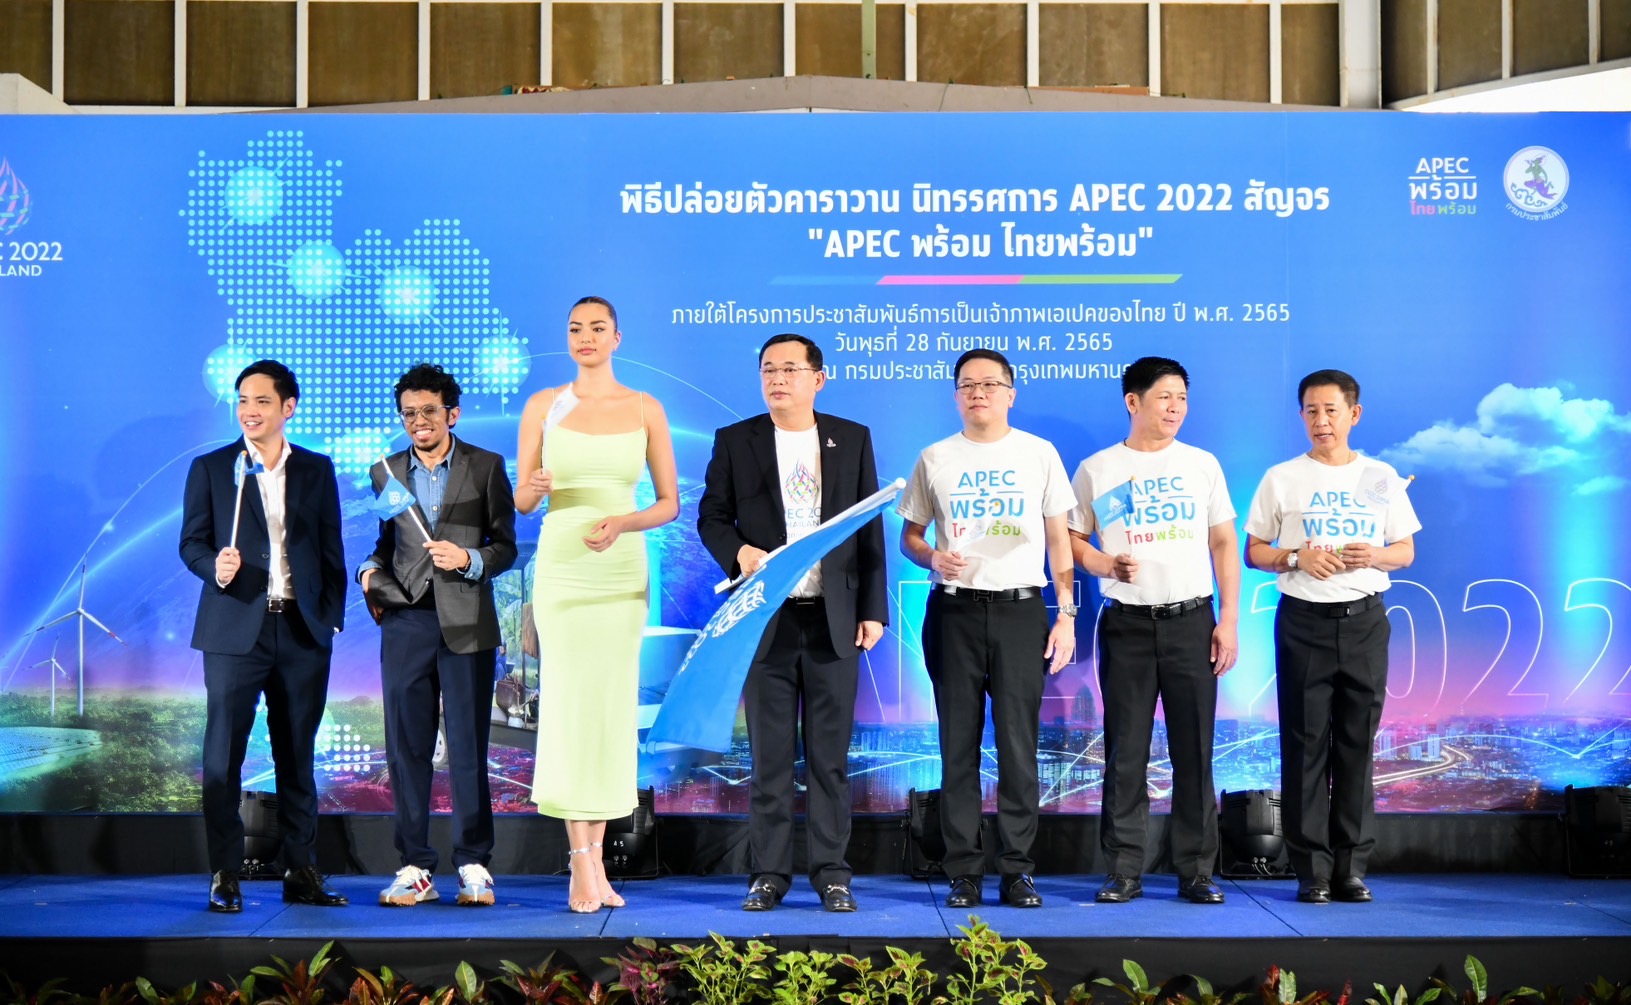 ​รมต. อนุชา คิกออฟปล่อยคาราวานรถนิทรรศการ APEC 2022 สัญจร “APEC พร้อม ไทยพร้อม” สร้างการรับรู้คนไทยภาคภูมิใจ – มีส่วนร่วมเป็นเจ้าภาพเอเปค